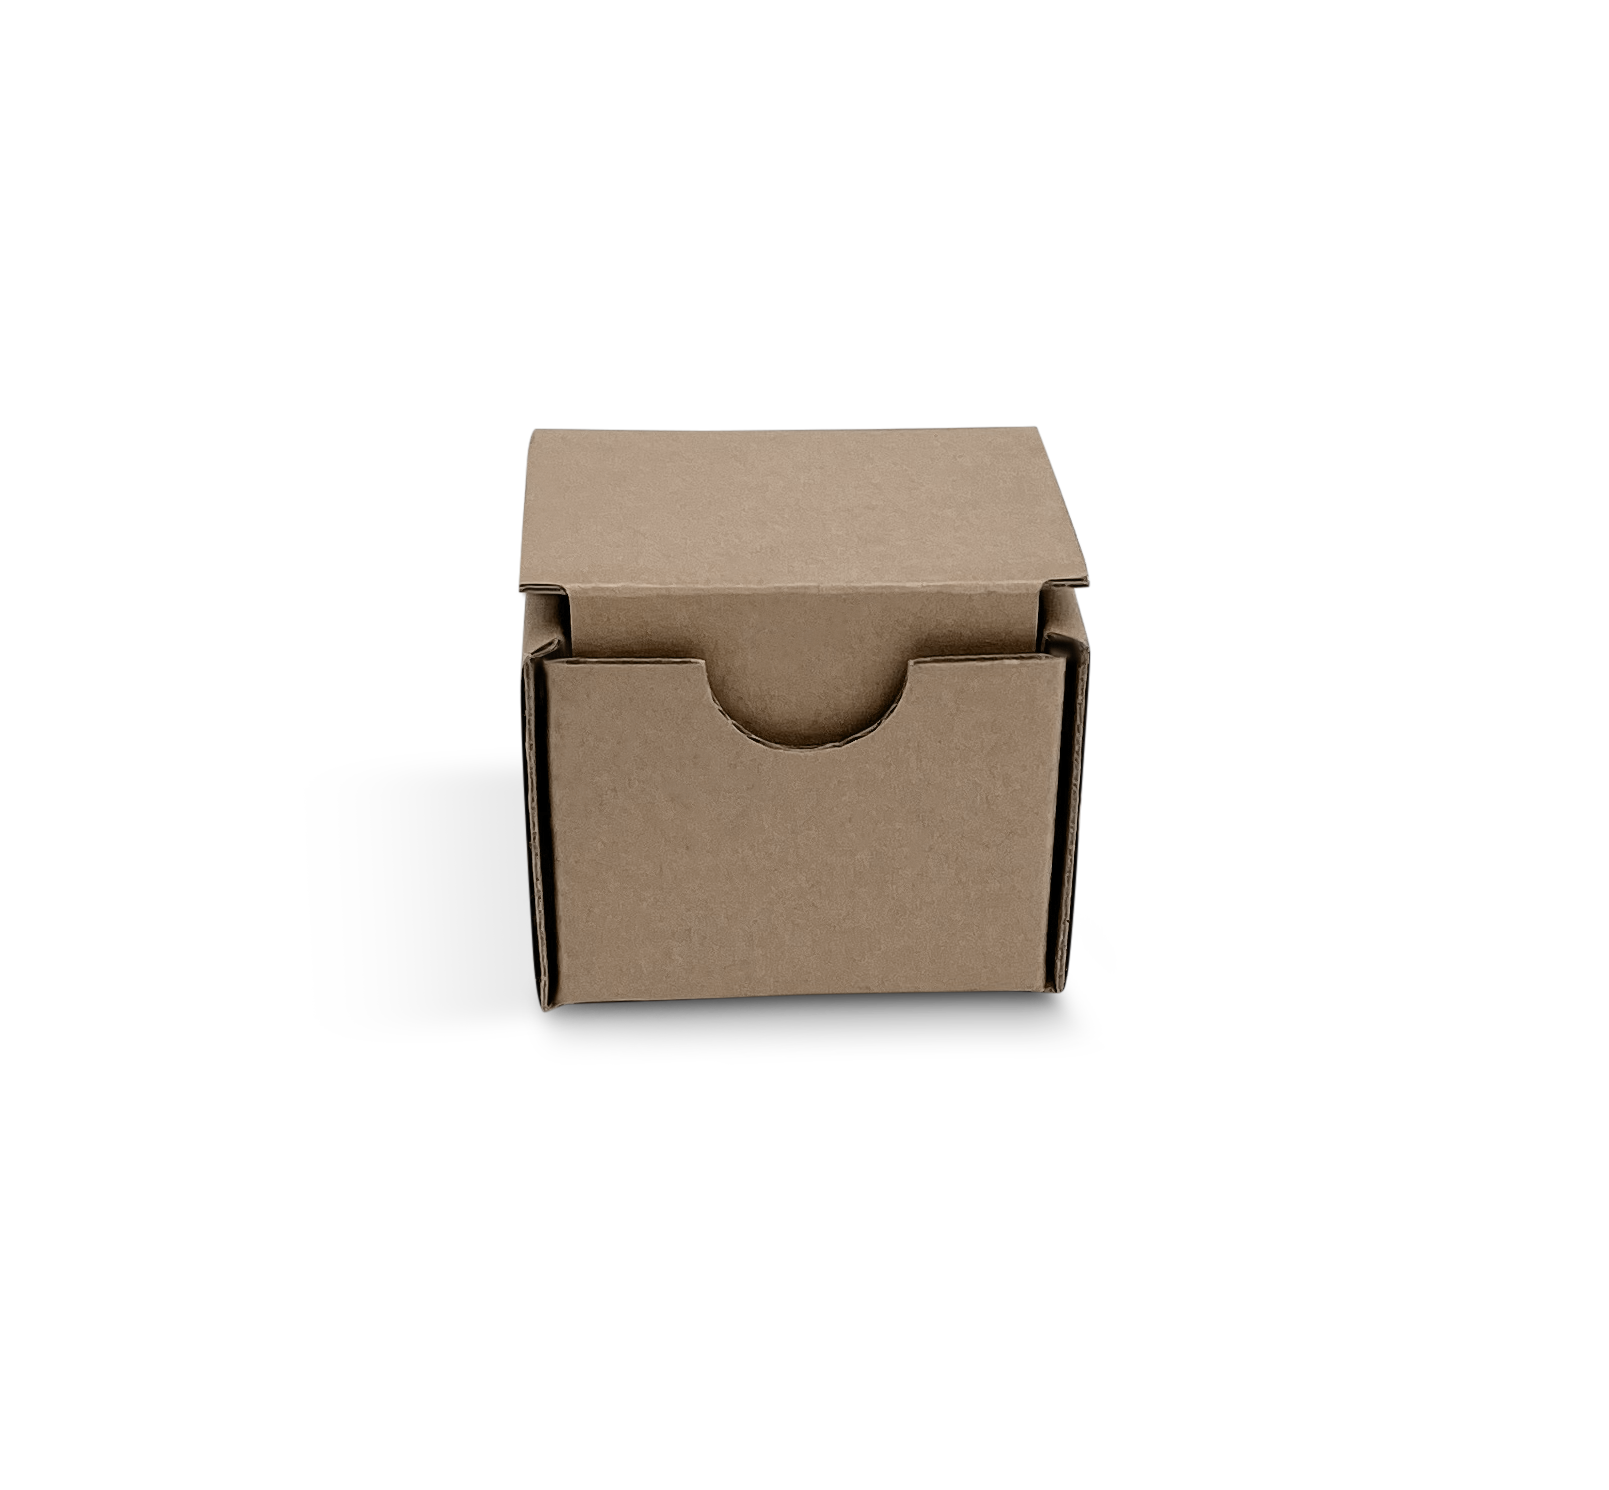 Exemple de petite boite de carton ondulé